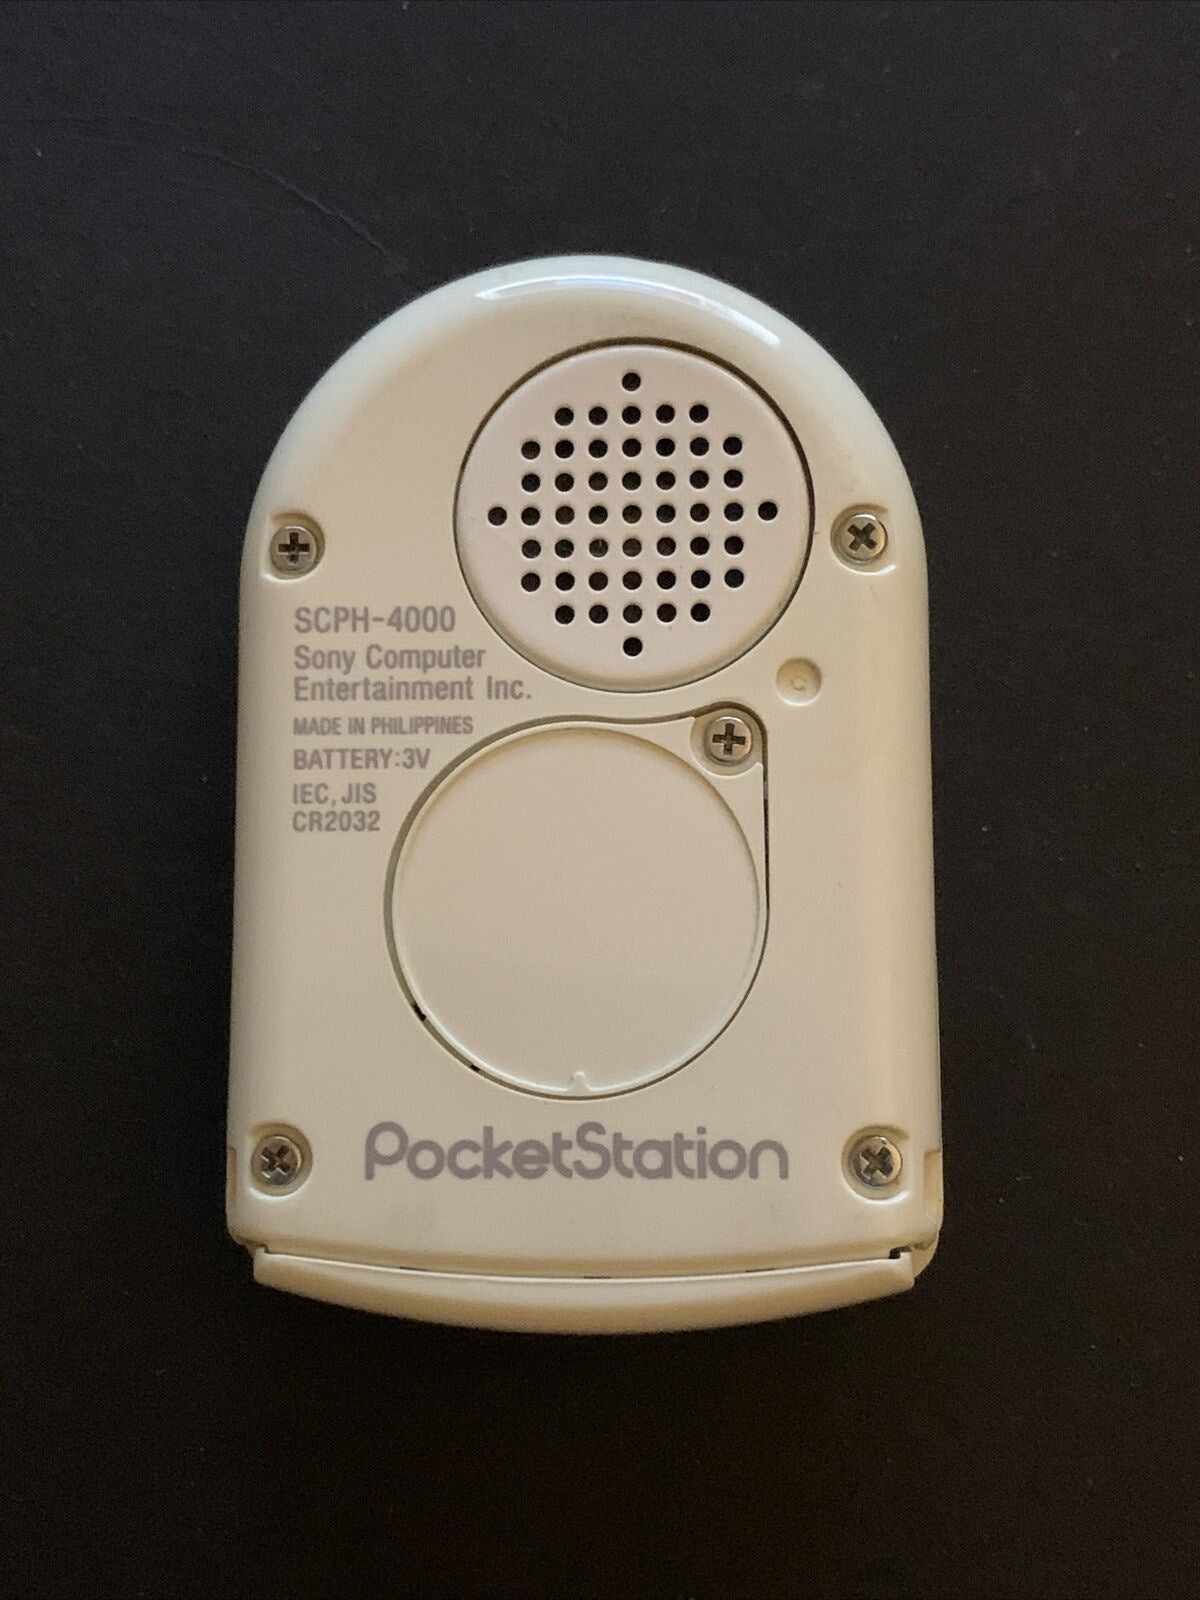 Sony Pocket Station SCPH-4000 White PocketStation